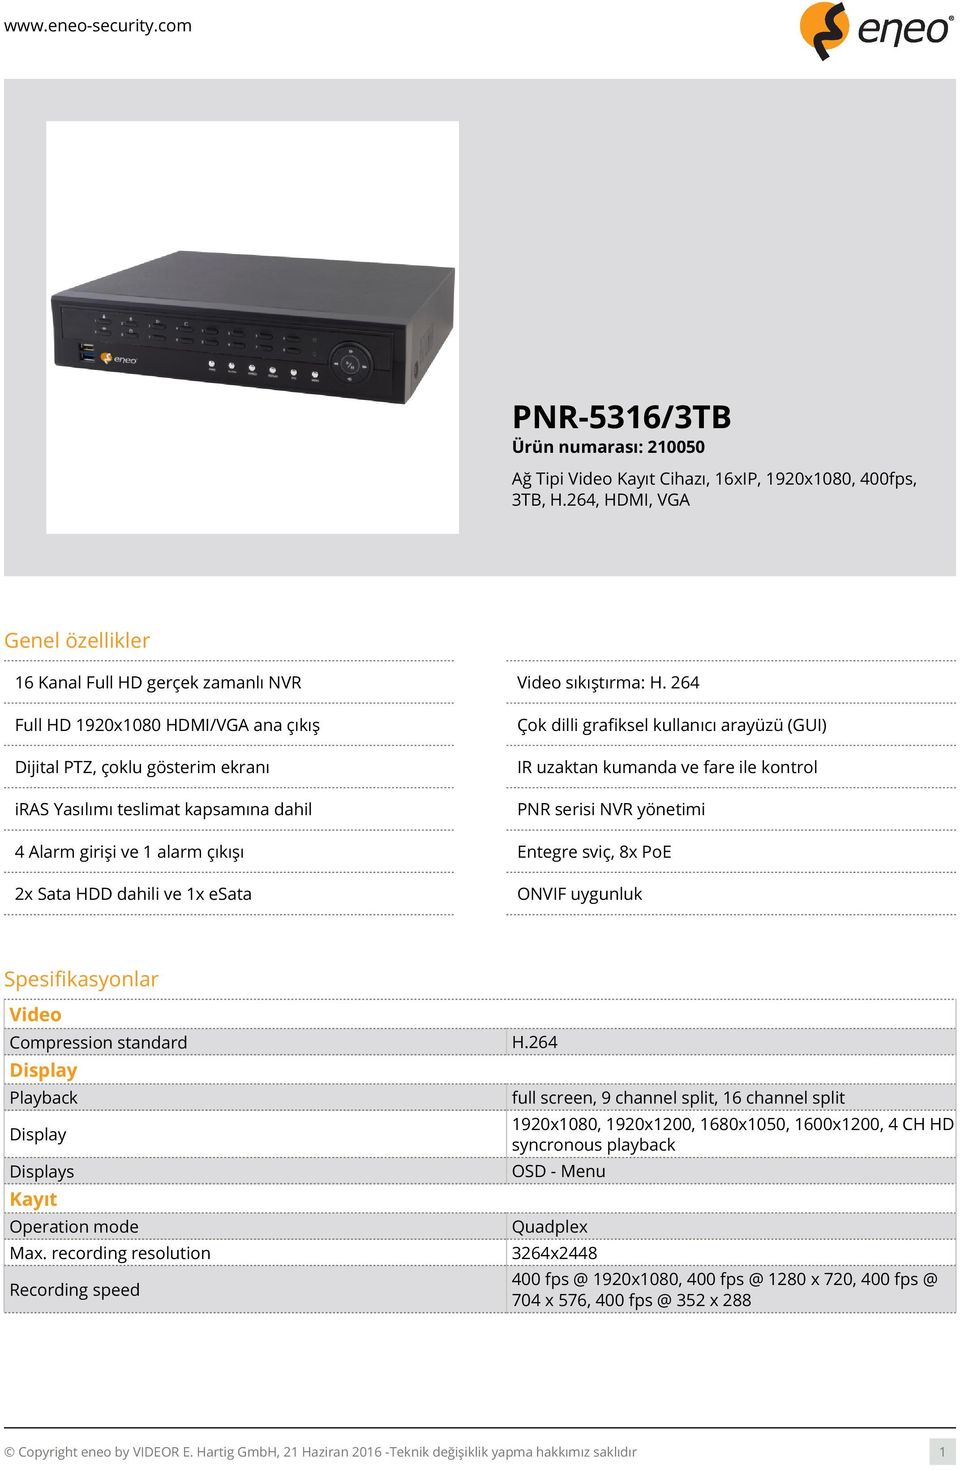 PNR serisi NVR yönetimi 4 Alarm girişi ve 1 alarm çıkışı Entegre sviç, 8x PoE 2x Sata HDD dahili ve 1x esata ONVIF uygunluk Spesifikasyonlar Video Compression standard H.